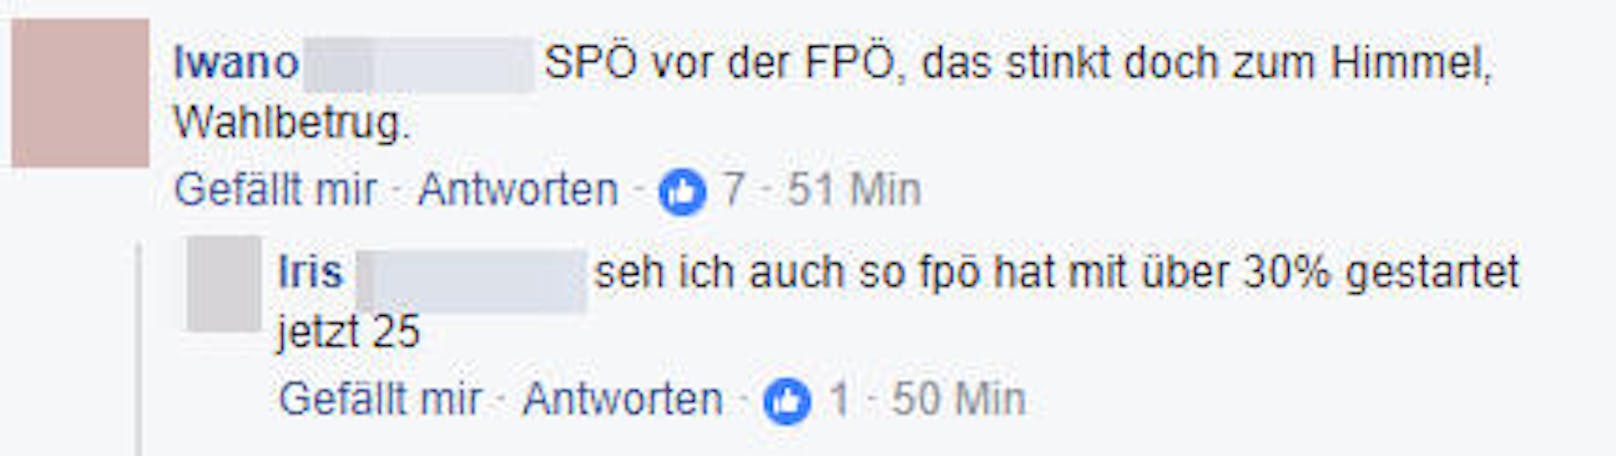 Die FPÖ lag bei der ersten Hochrechnung deutlich auf Platz 2, stürzte dann auf Platz 3 massiv ab. Die Fans sind fassunglos und orten Wahlbetrug.